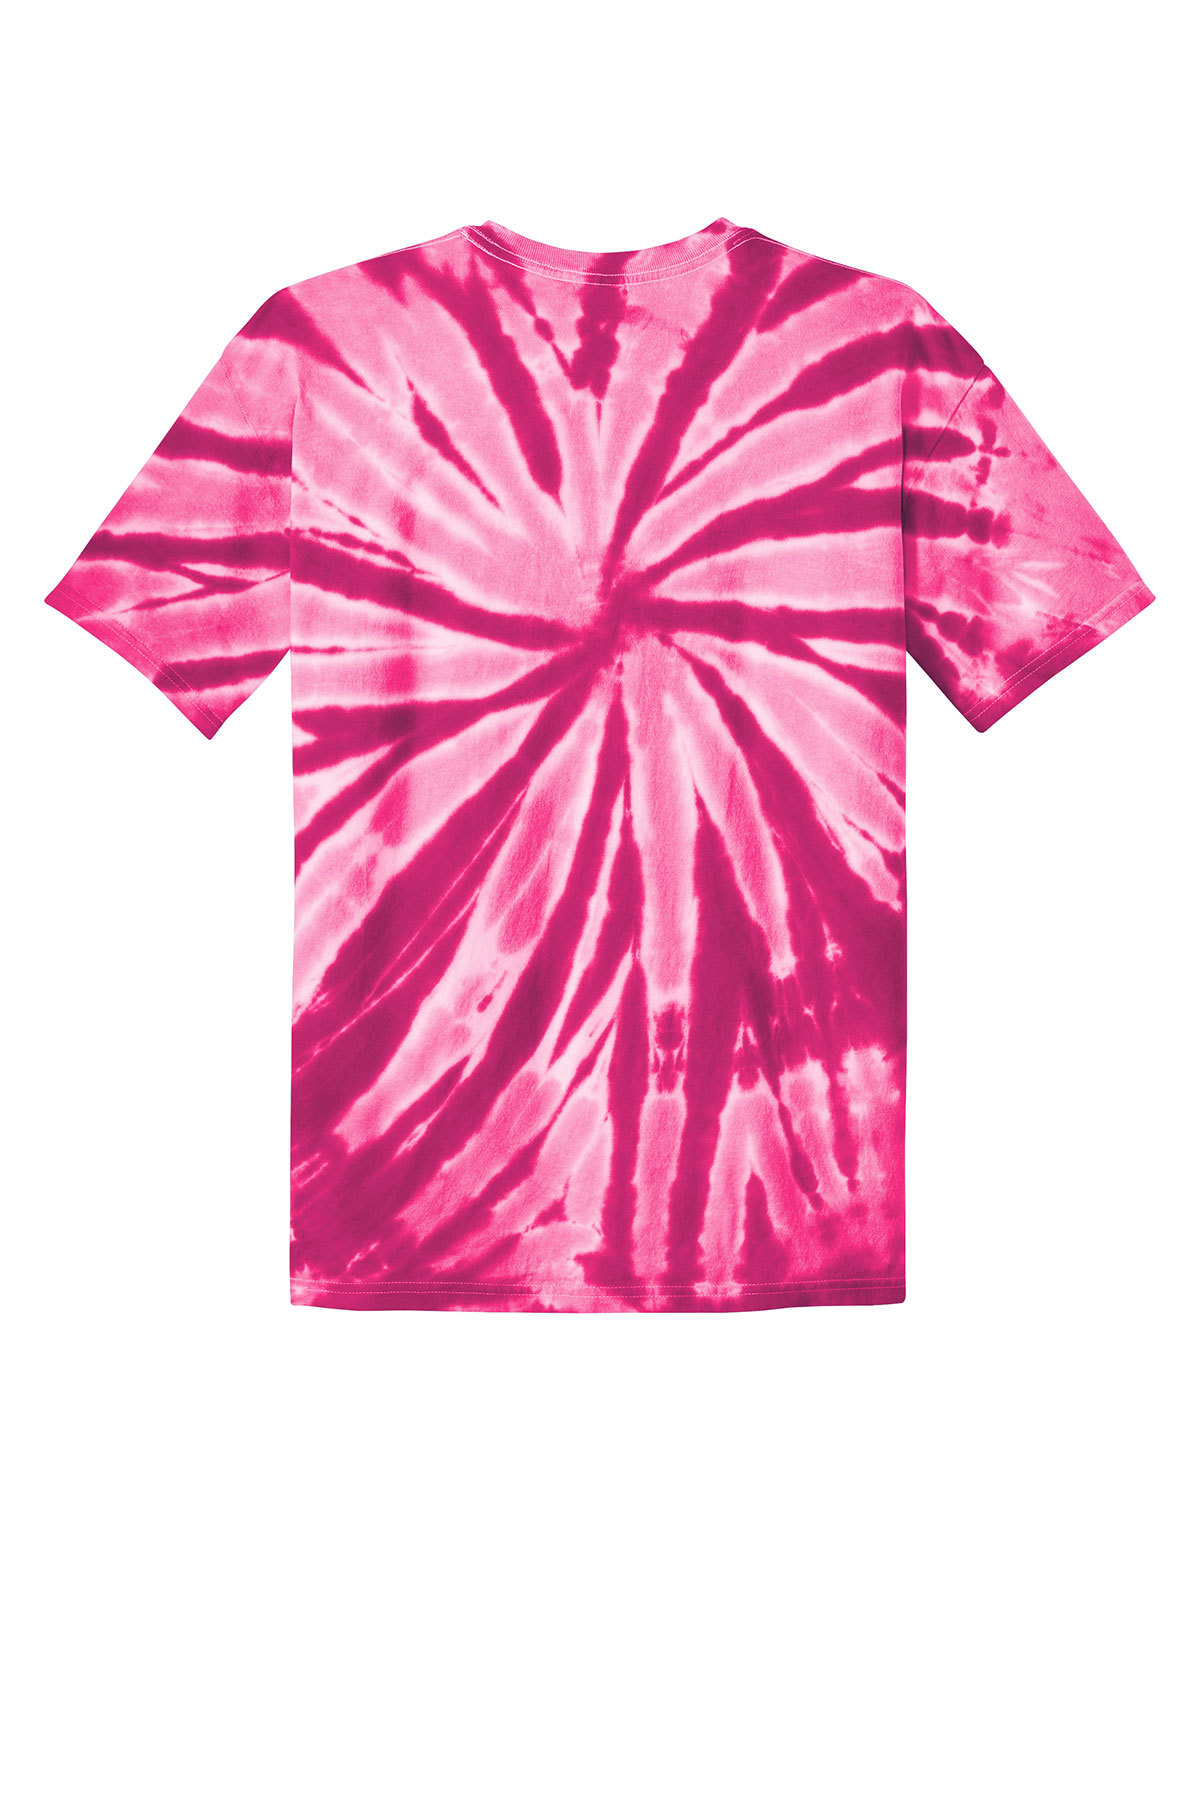 pink tie dye shirts